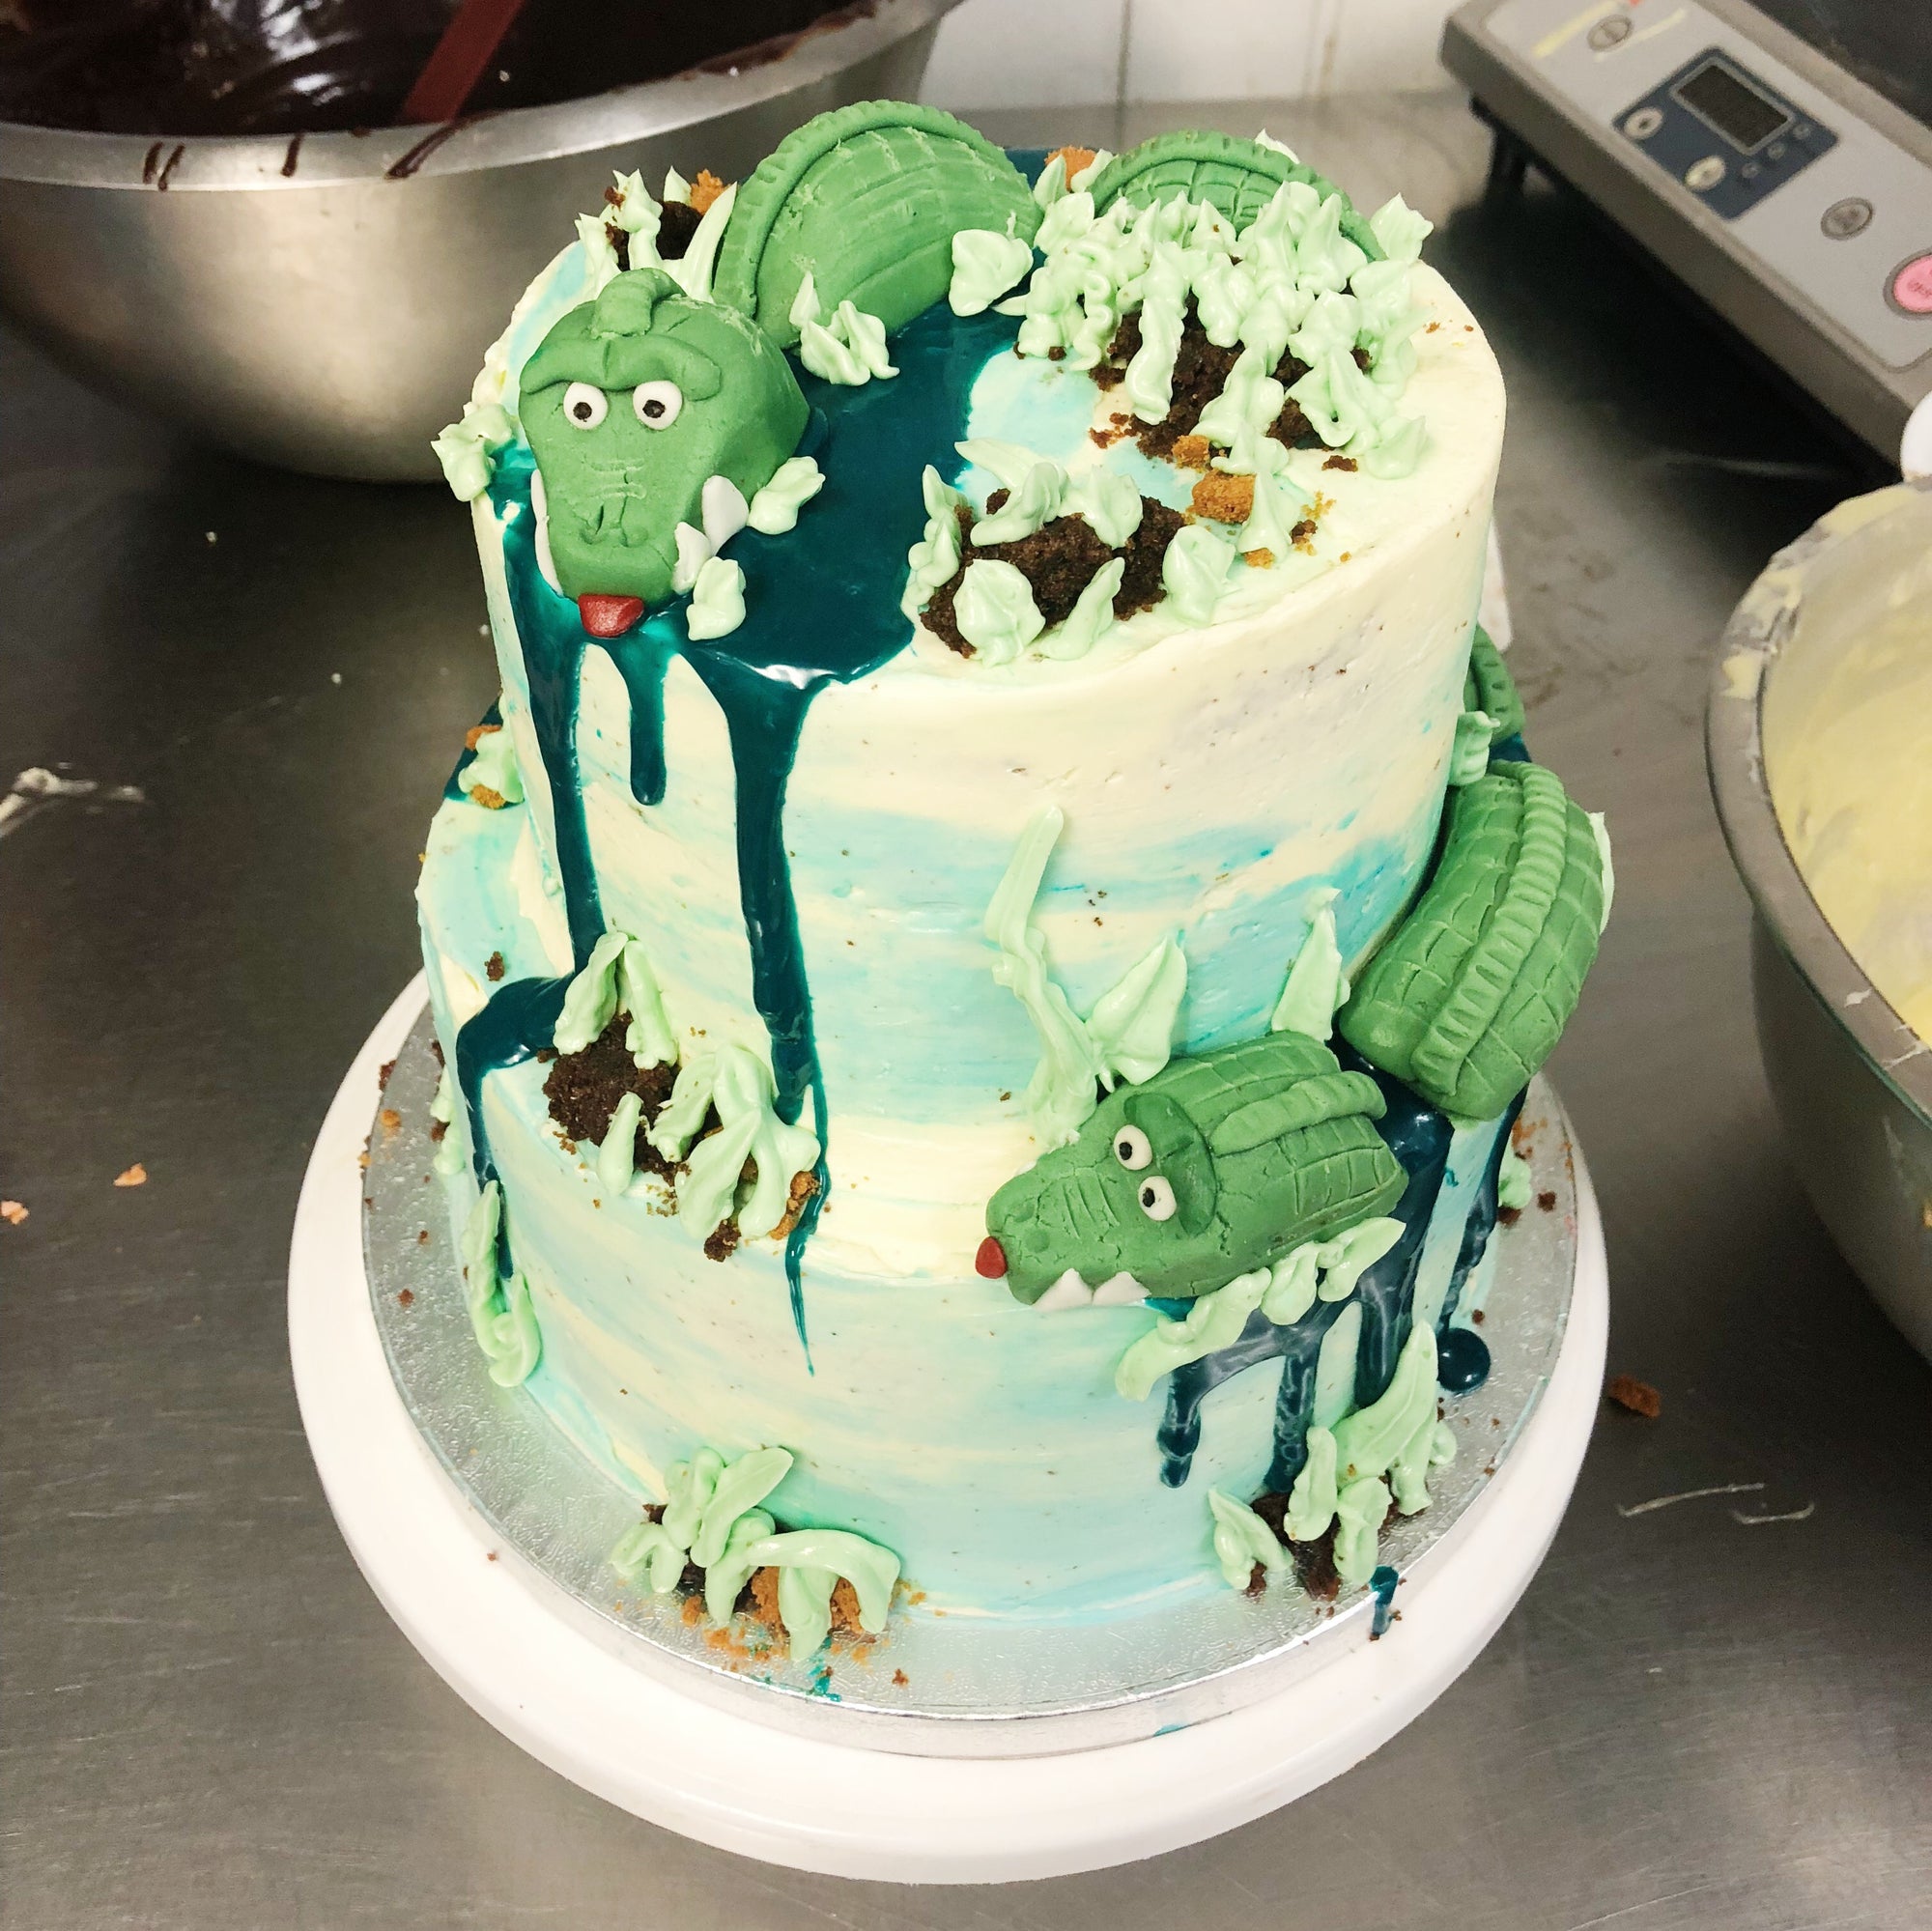 Chomp into Fun: Unique Crocodile Birthday Cake Delight!